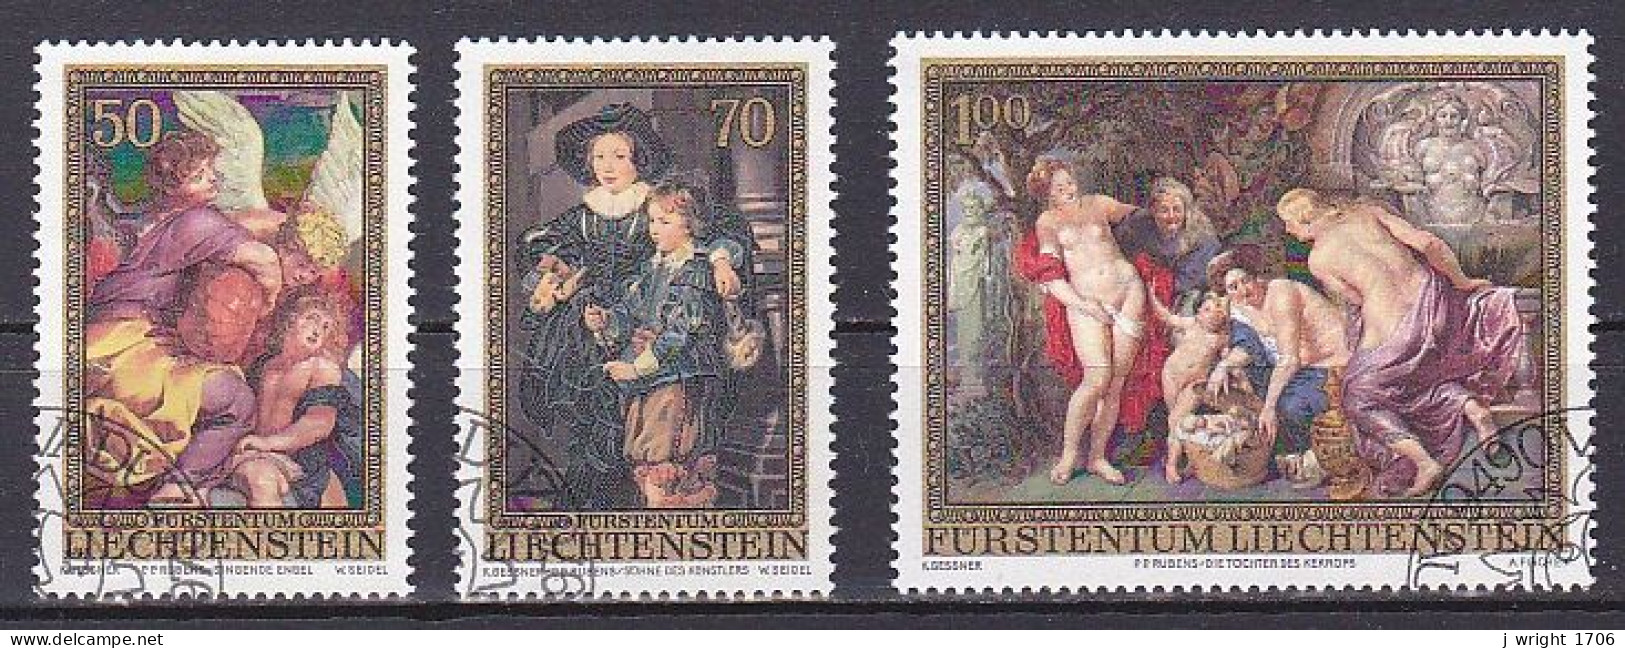 Liechtenstein, 1976, Peter Paul Rubens, Set, CTO - Gebraucht